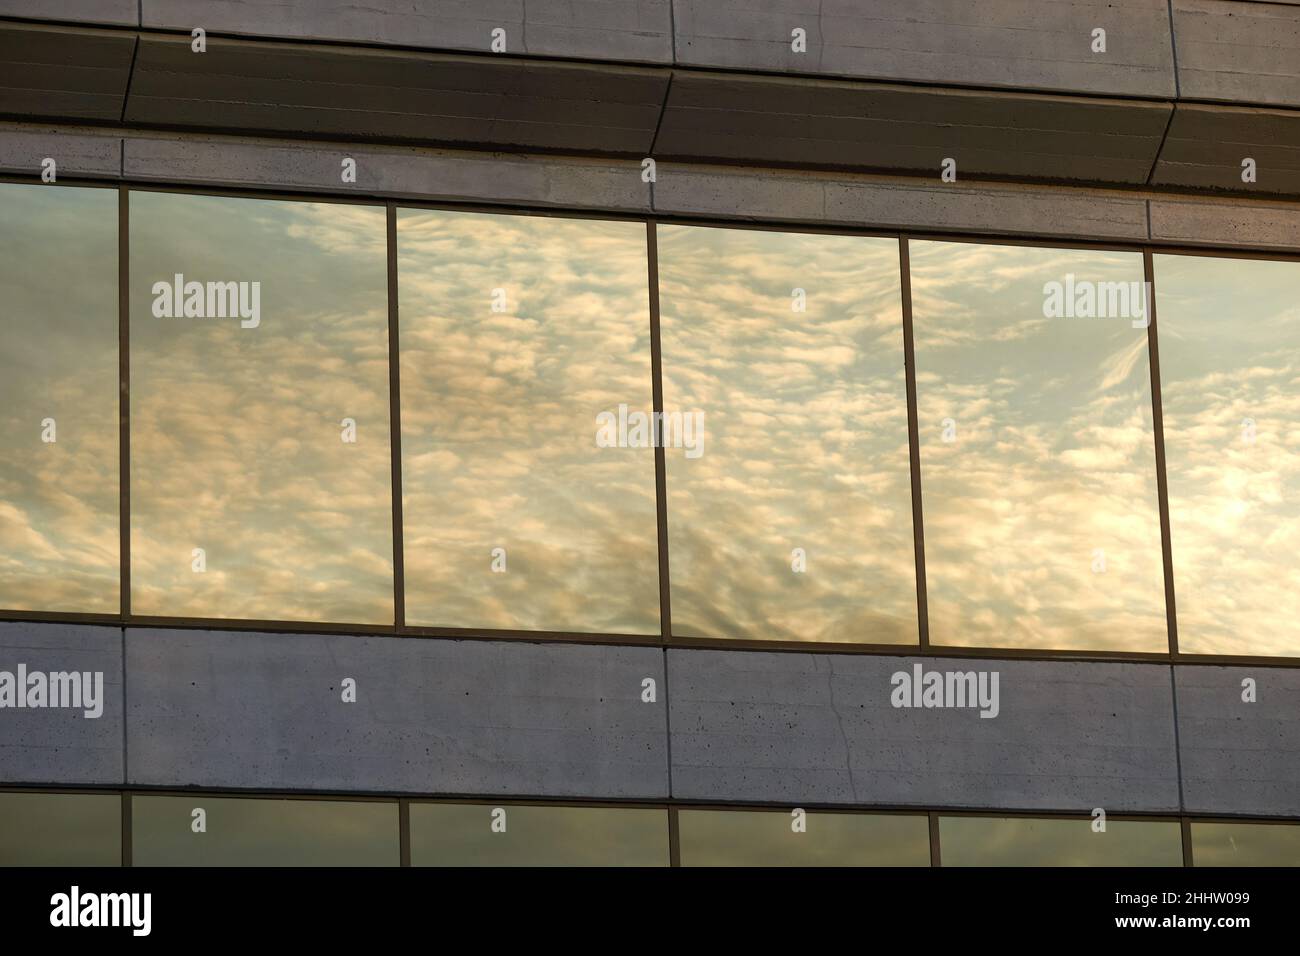 Las nubes blancas y el cielo se reflejan en las ventanas de un moderno edificio de oficinas de hormigón Foto de stock